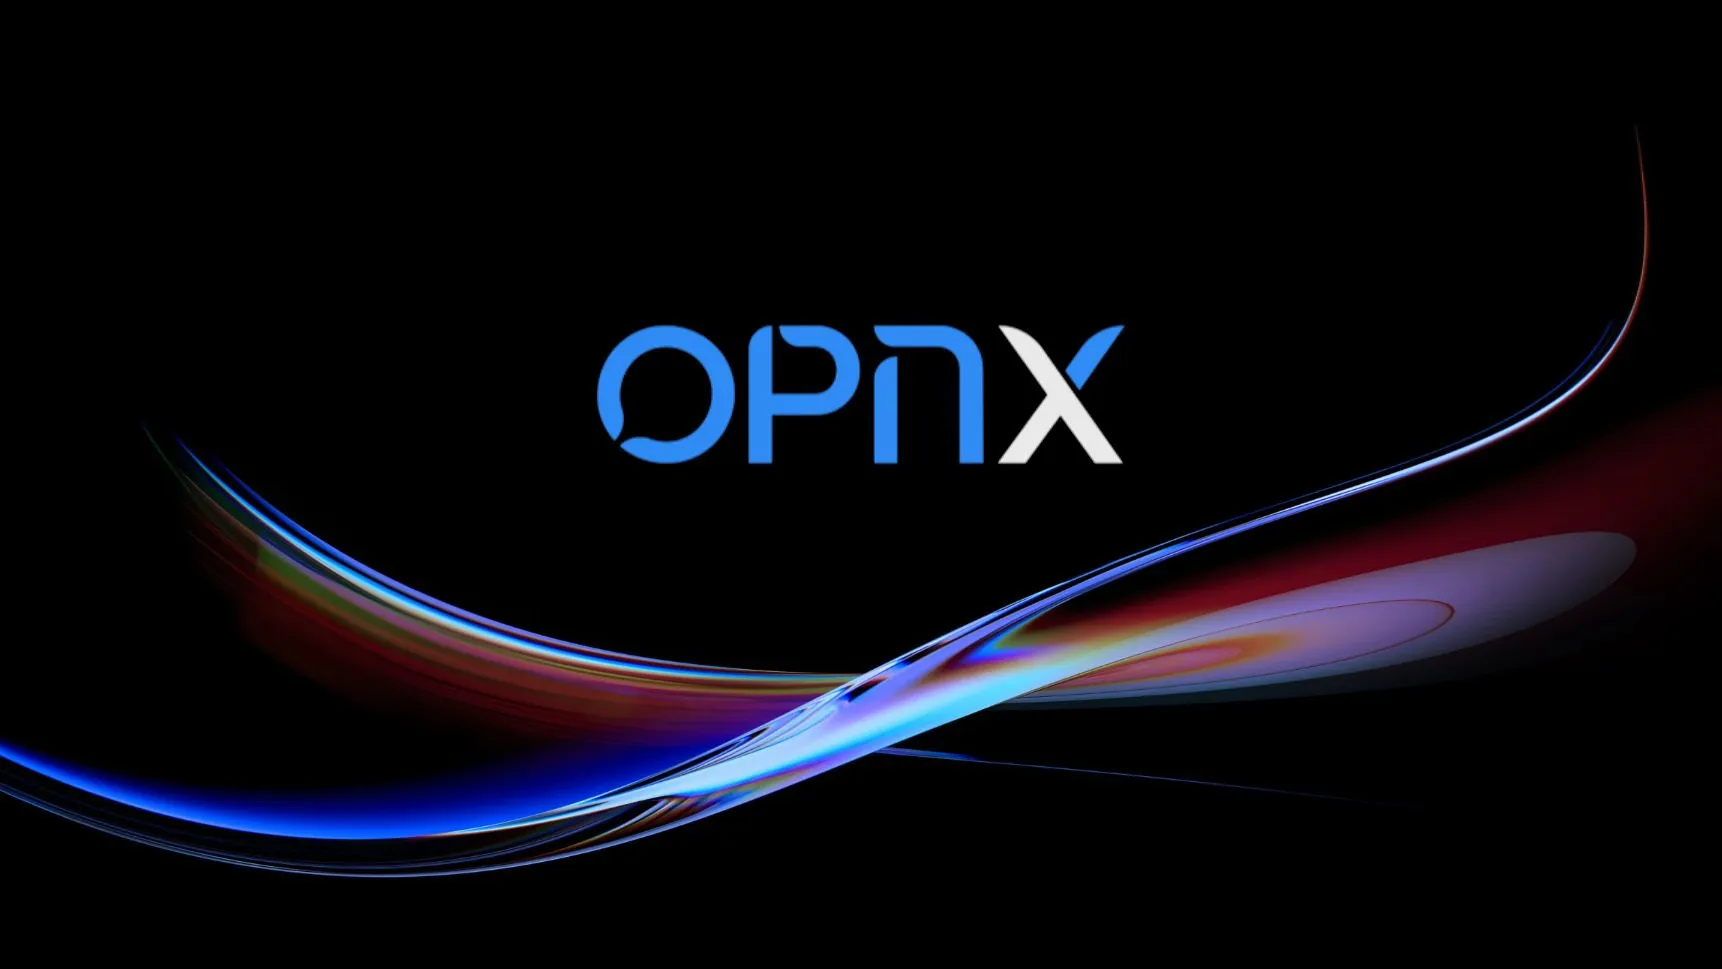 Image: OPNX.com